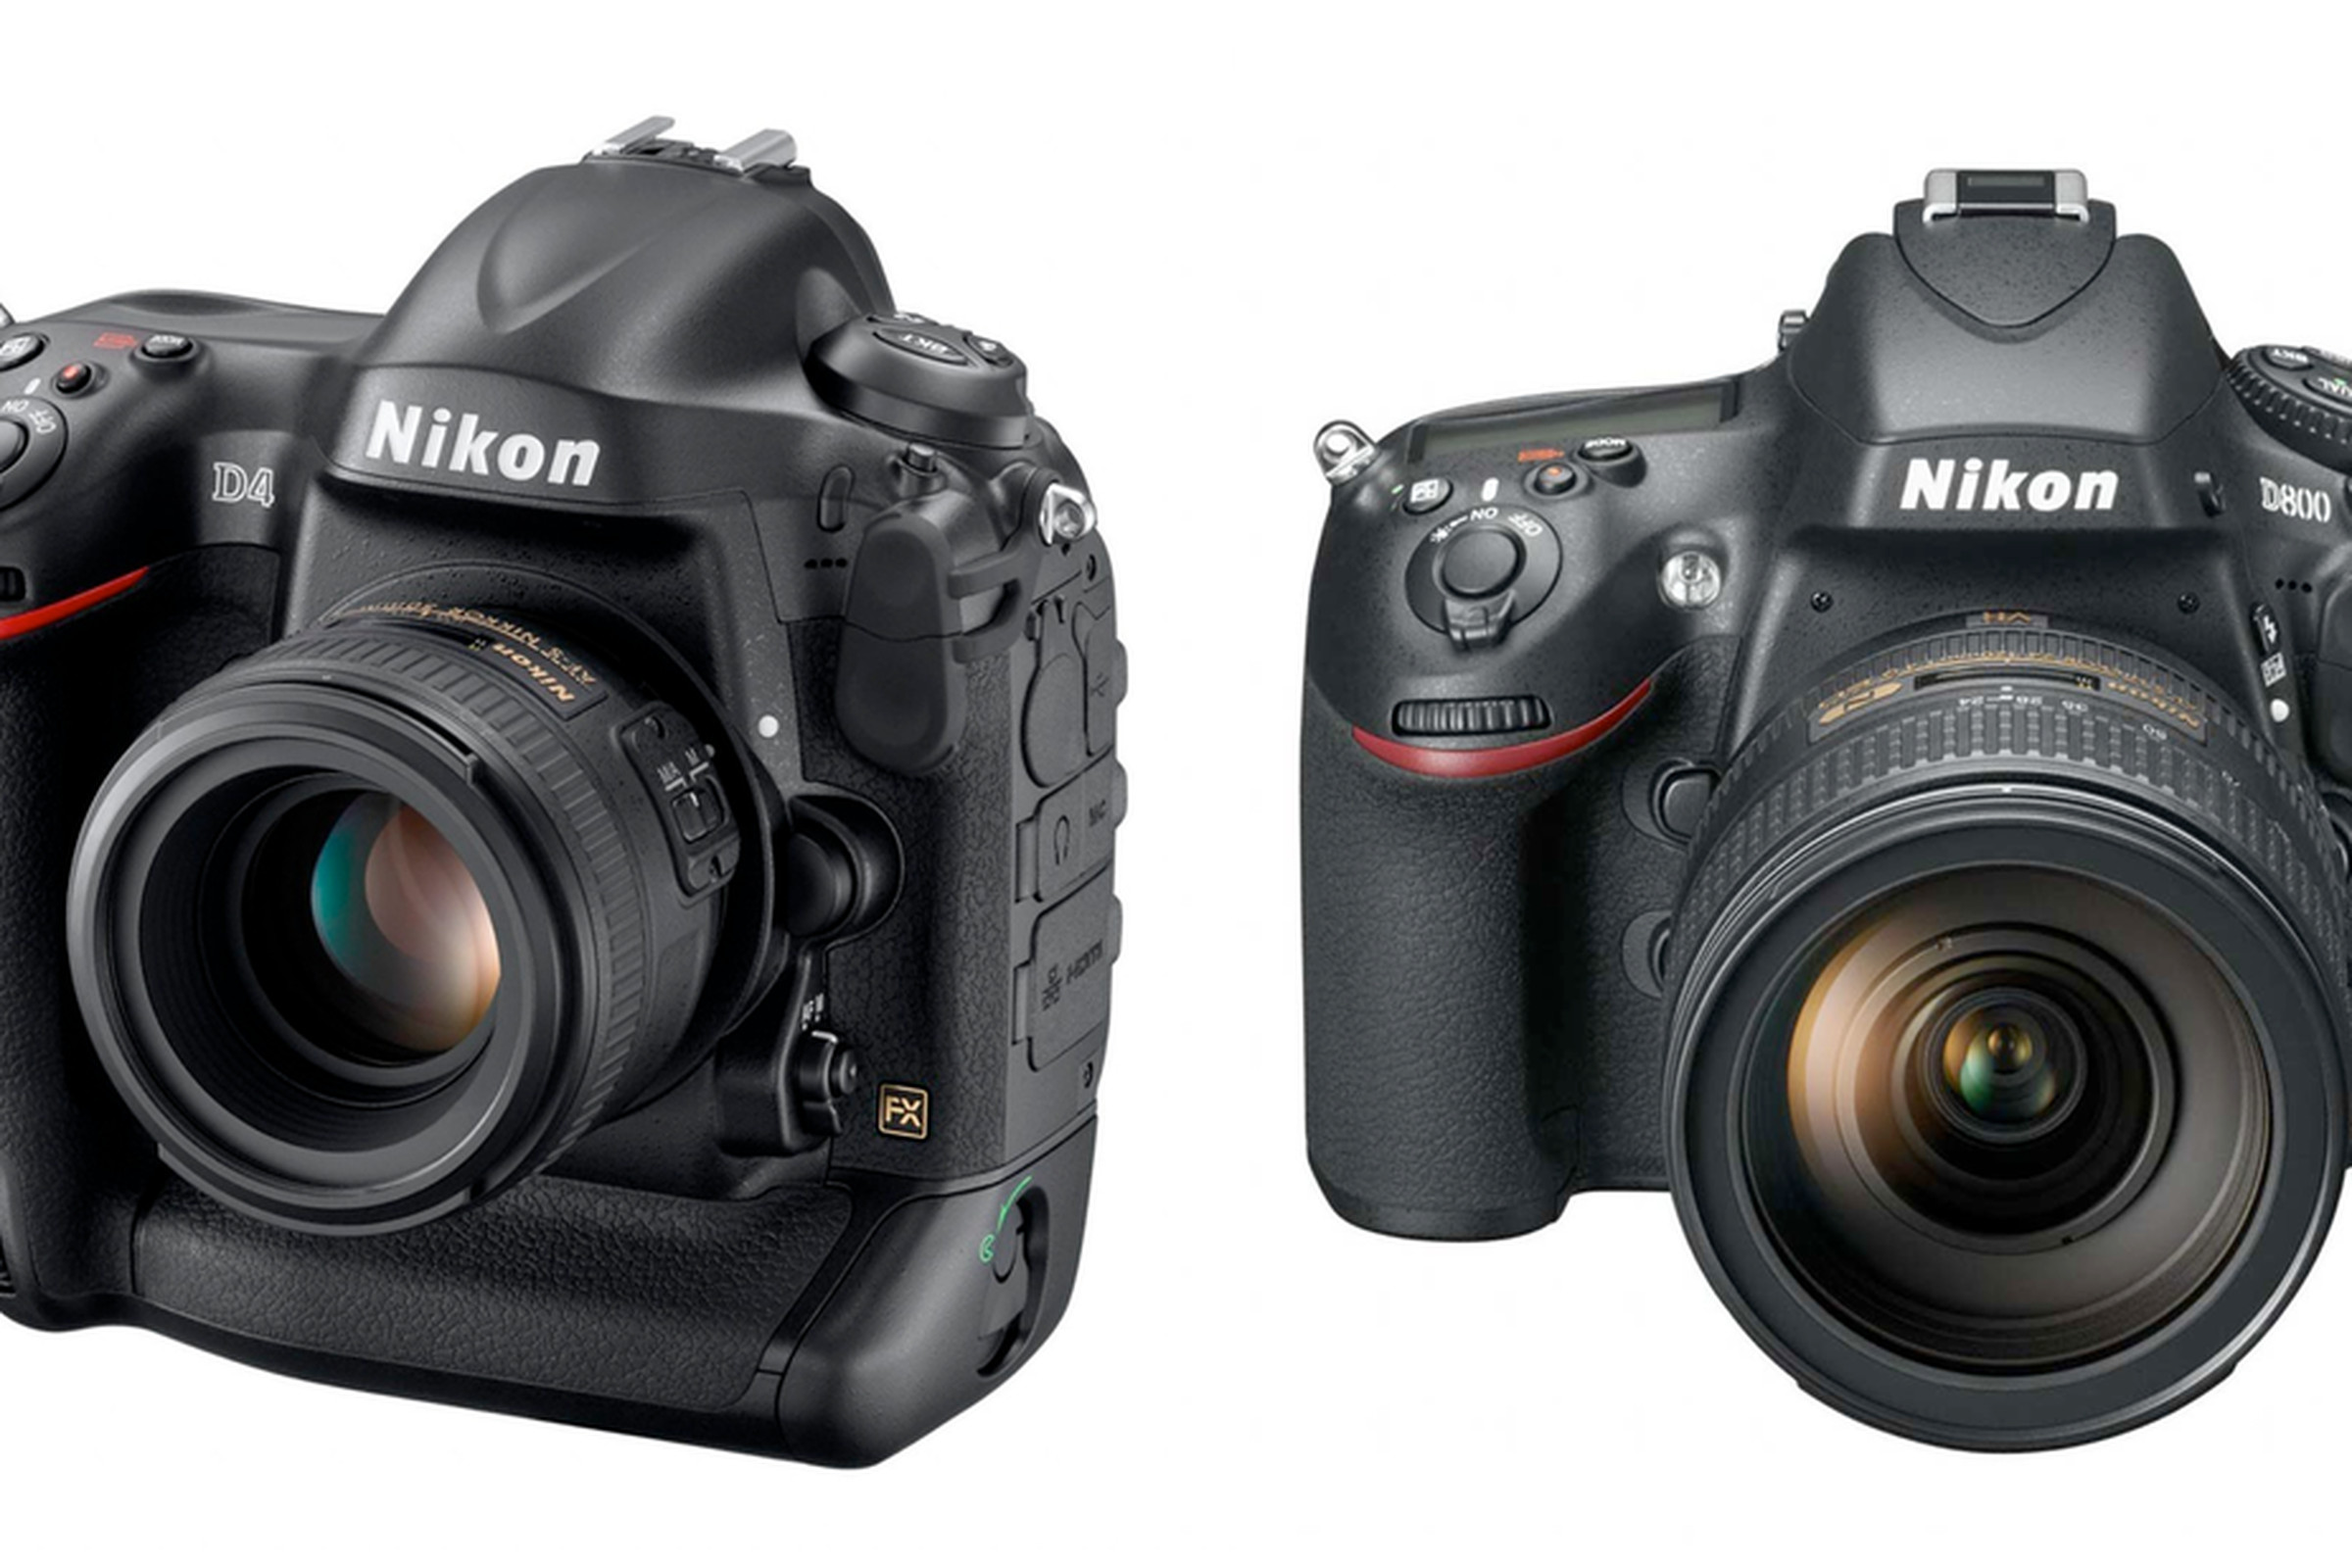 Nikon D800 and D4